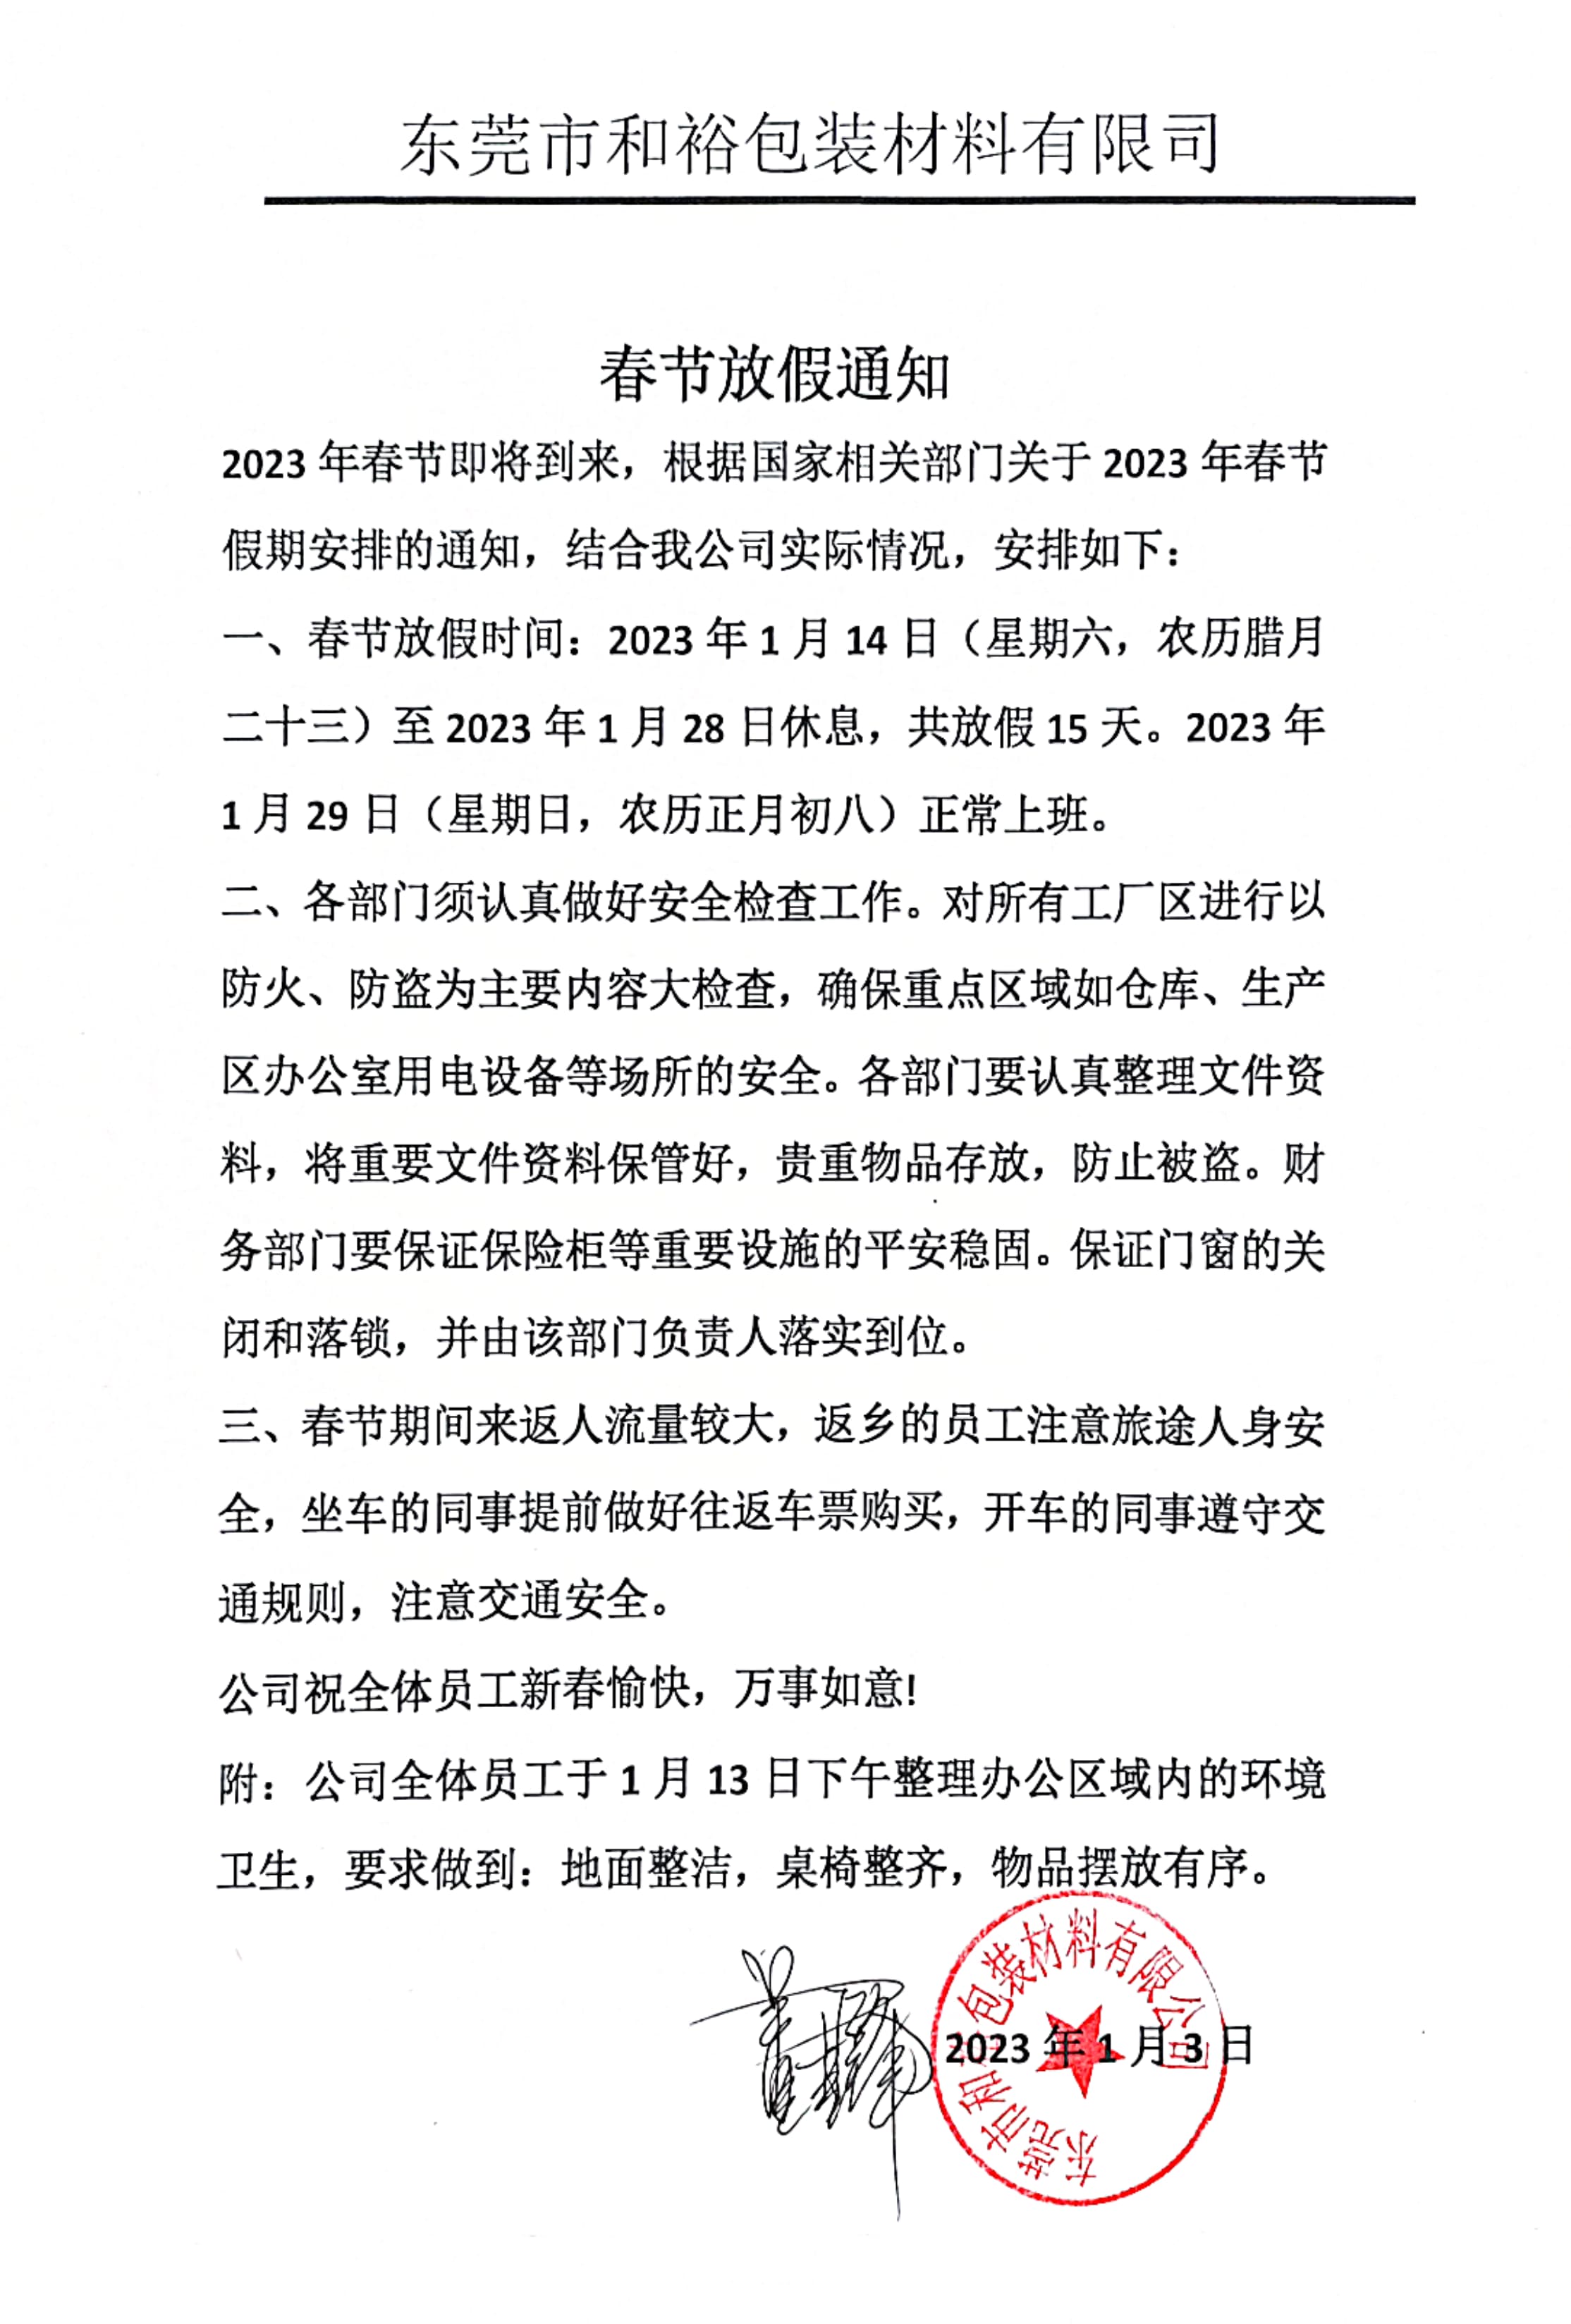 锡林郭勒盟2023年和裕包装春节放假通知